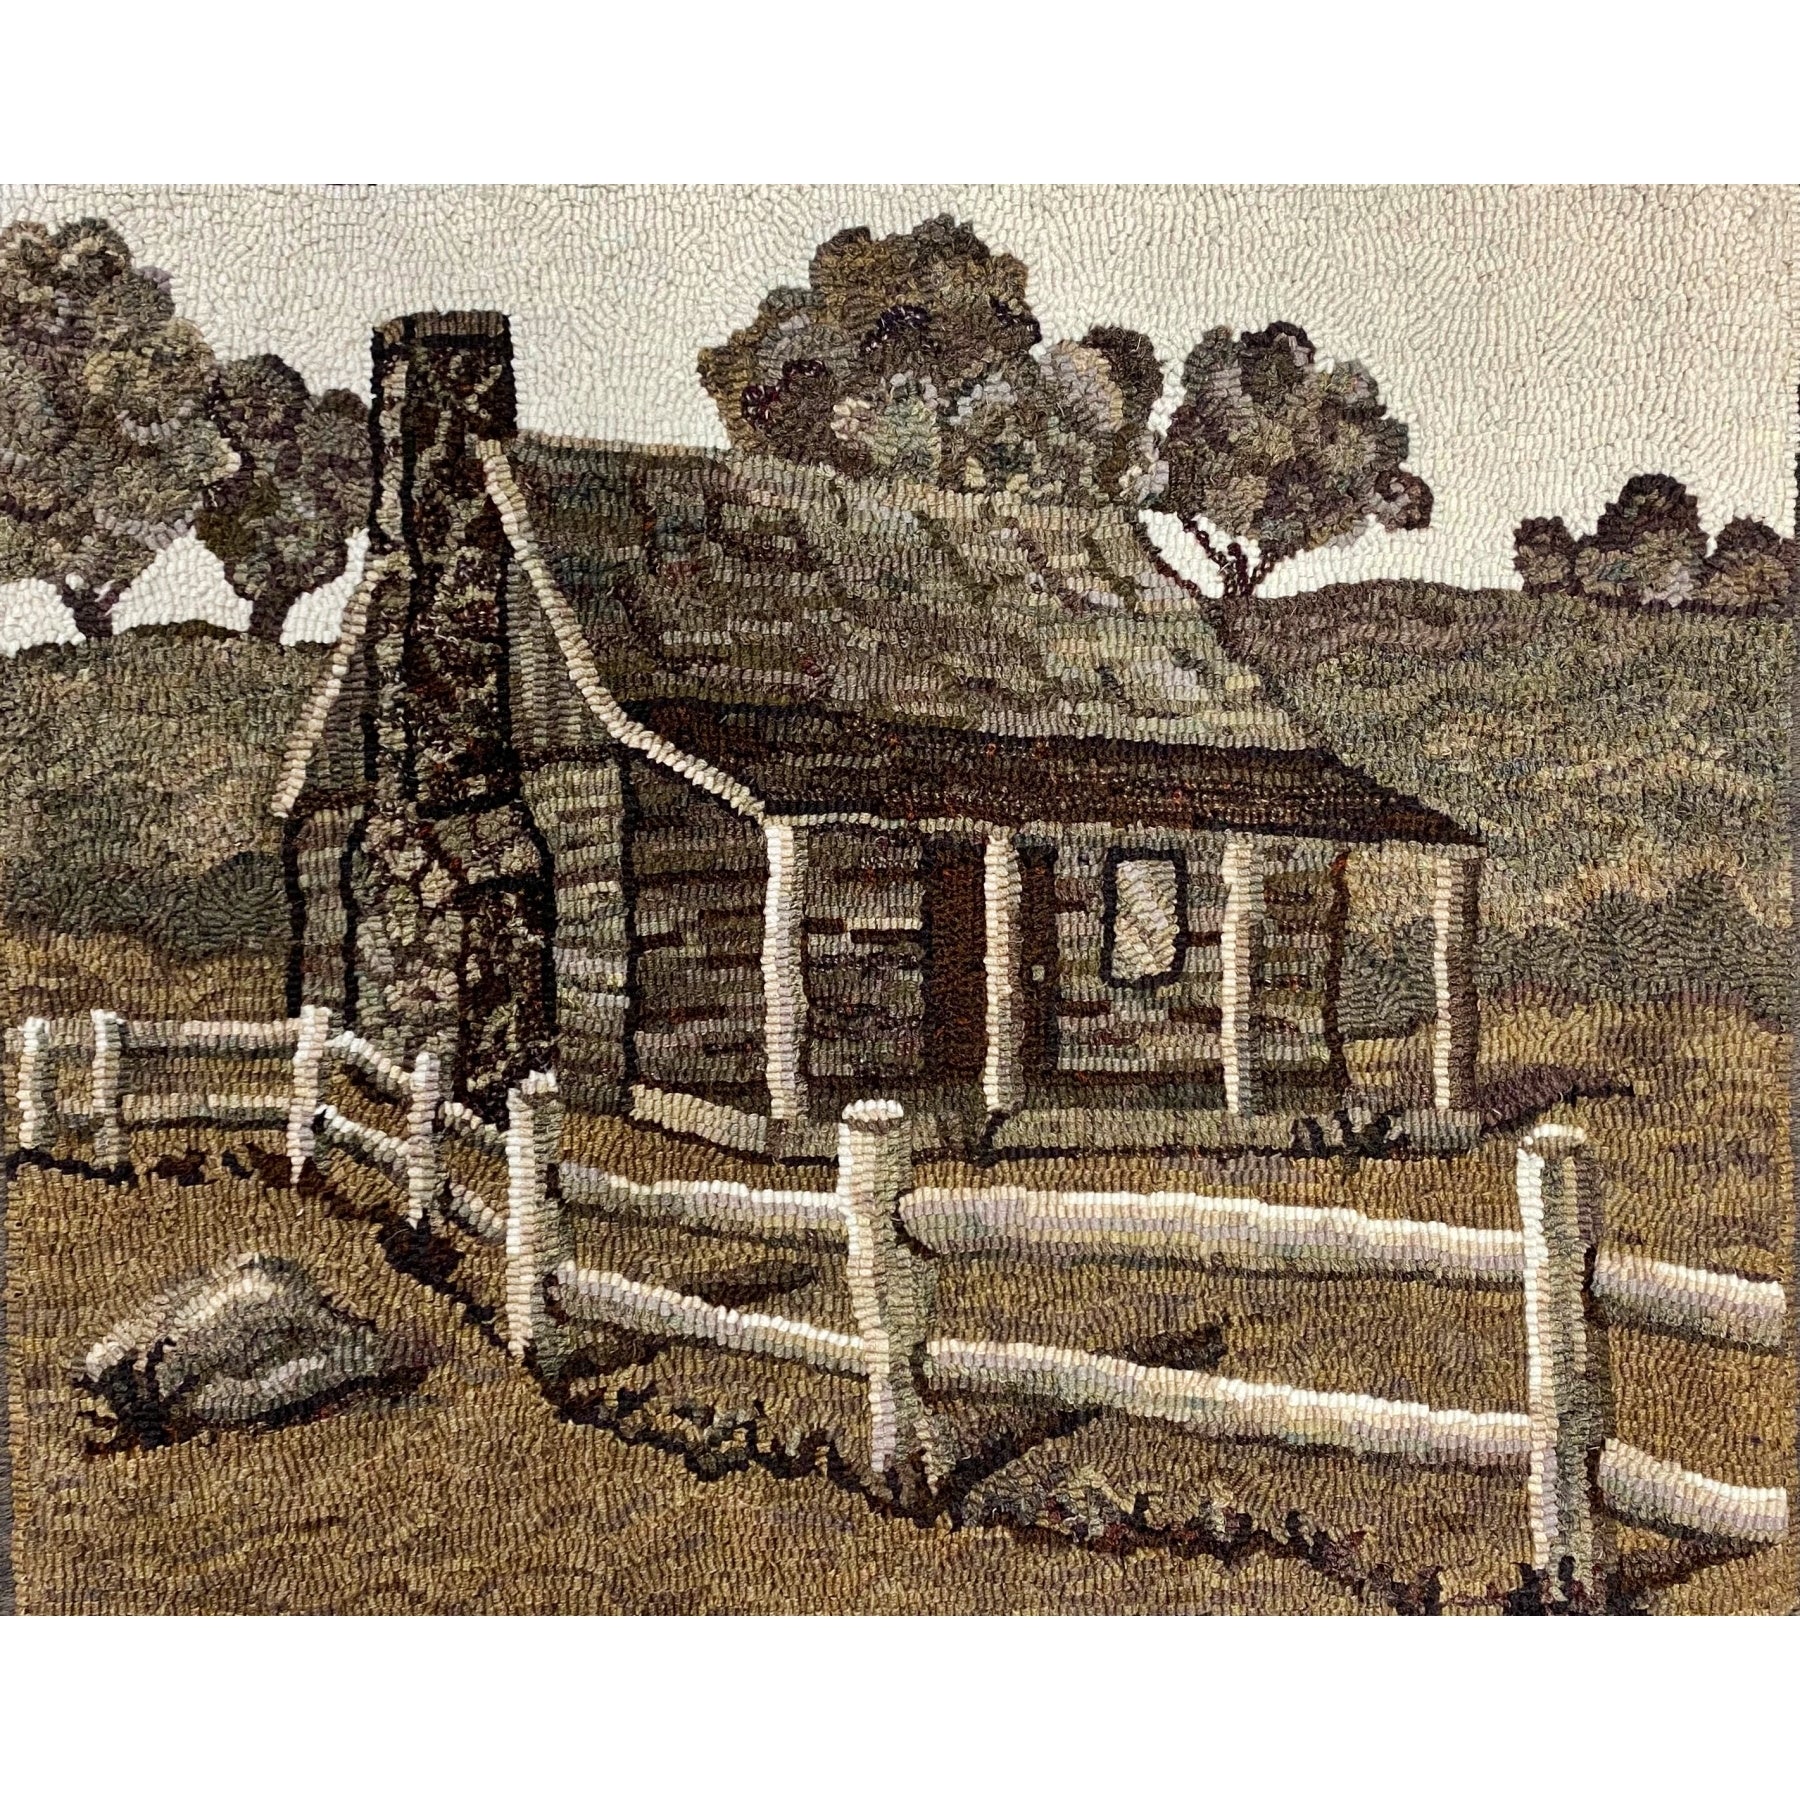 Pioneer Cabin, rug hooked by Linda Powell